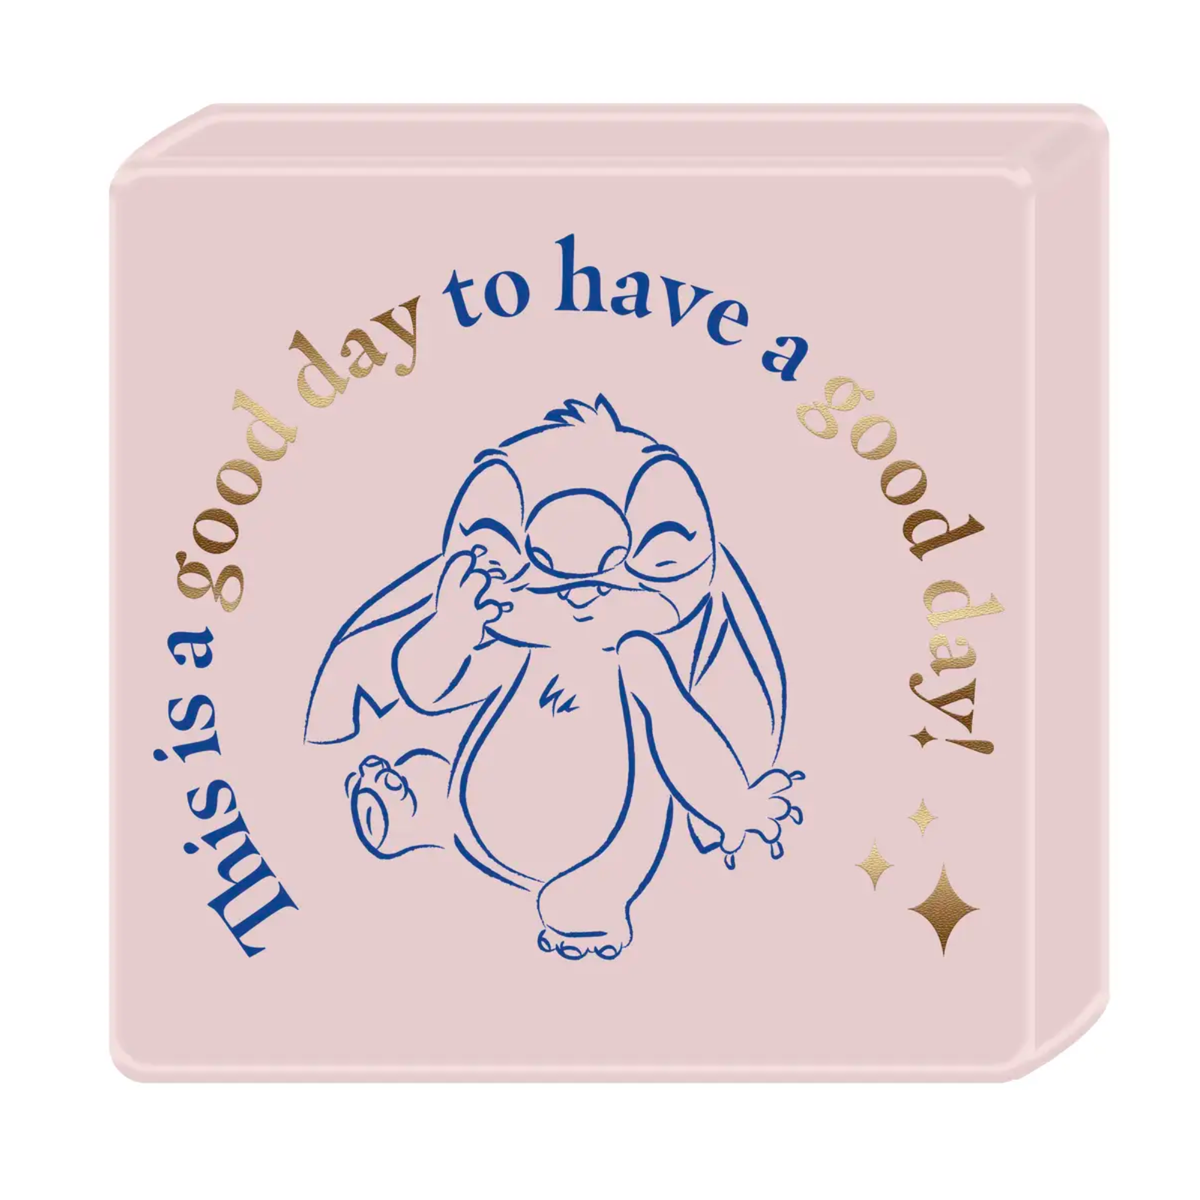 Lilo and Stitch Good Day Foil 5” x 5” Ceramic Box Sign